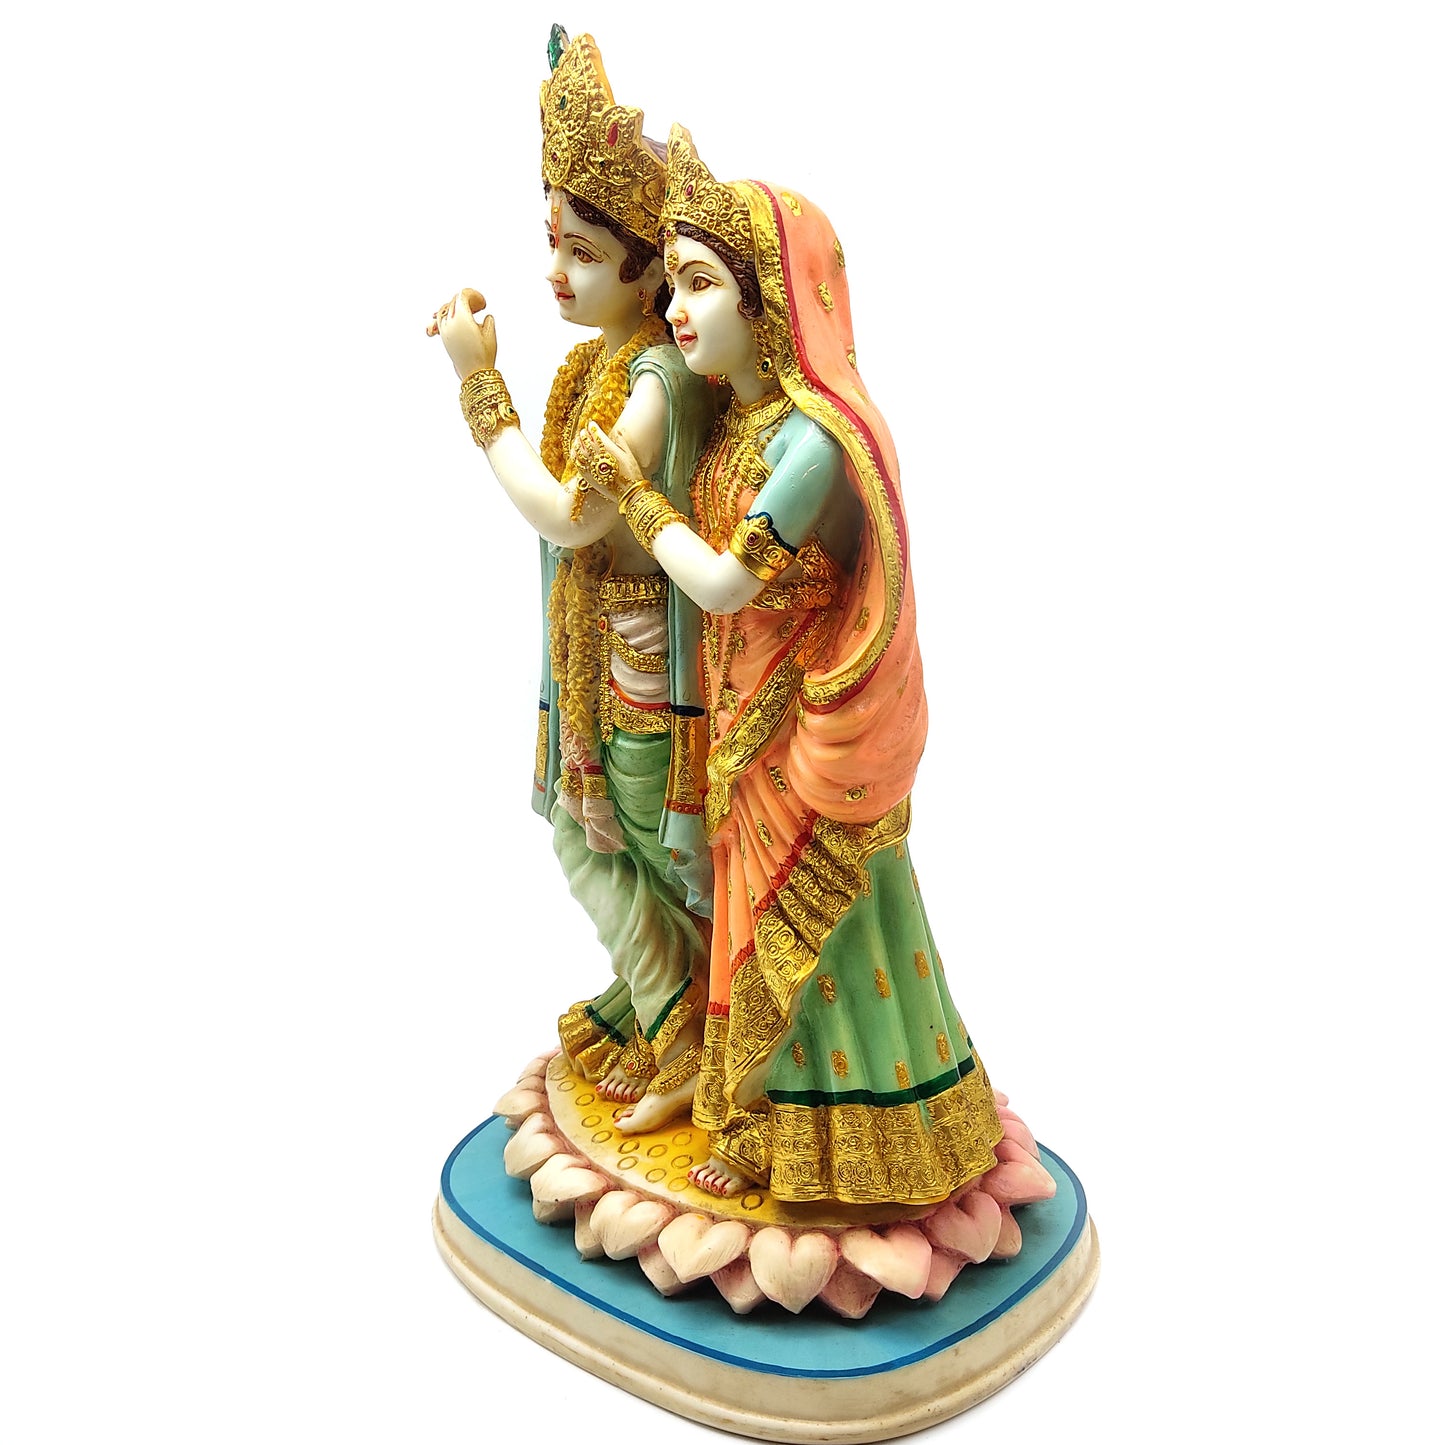 Radha-Krishna Embracing India Gods Marble Dust Hand-painted Statue Murti 15.5" Tall